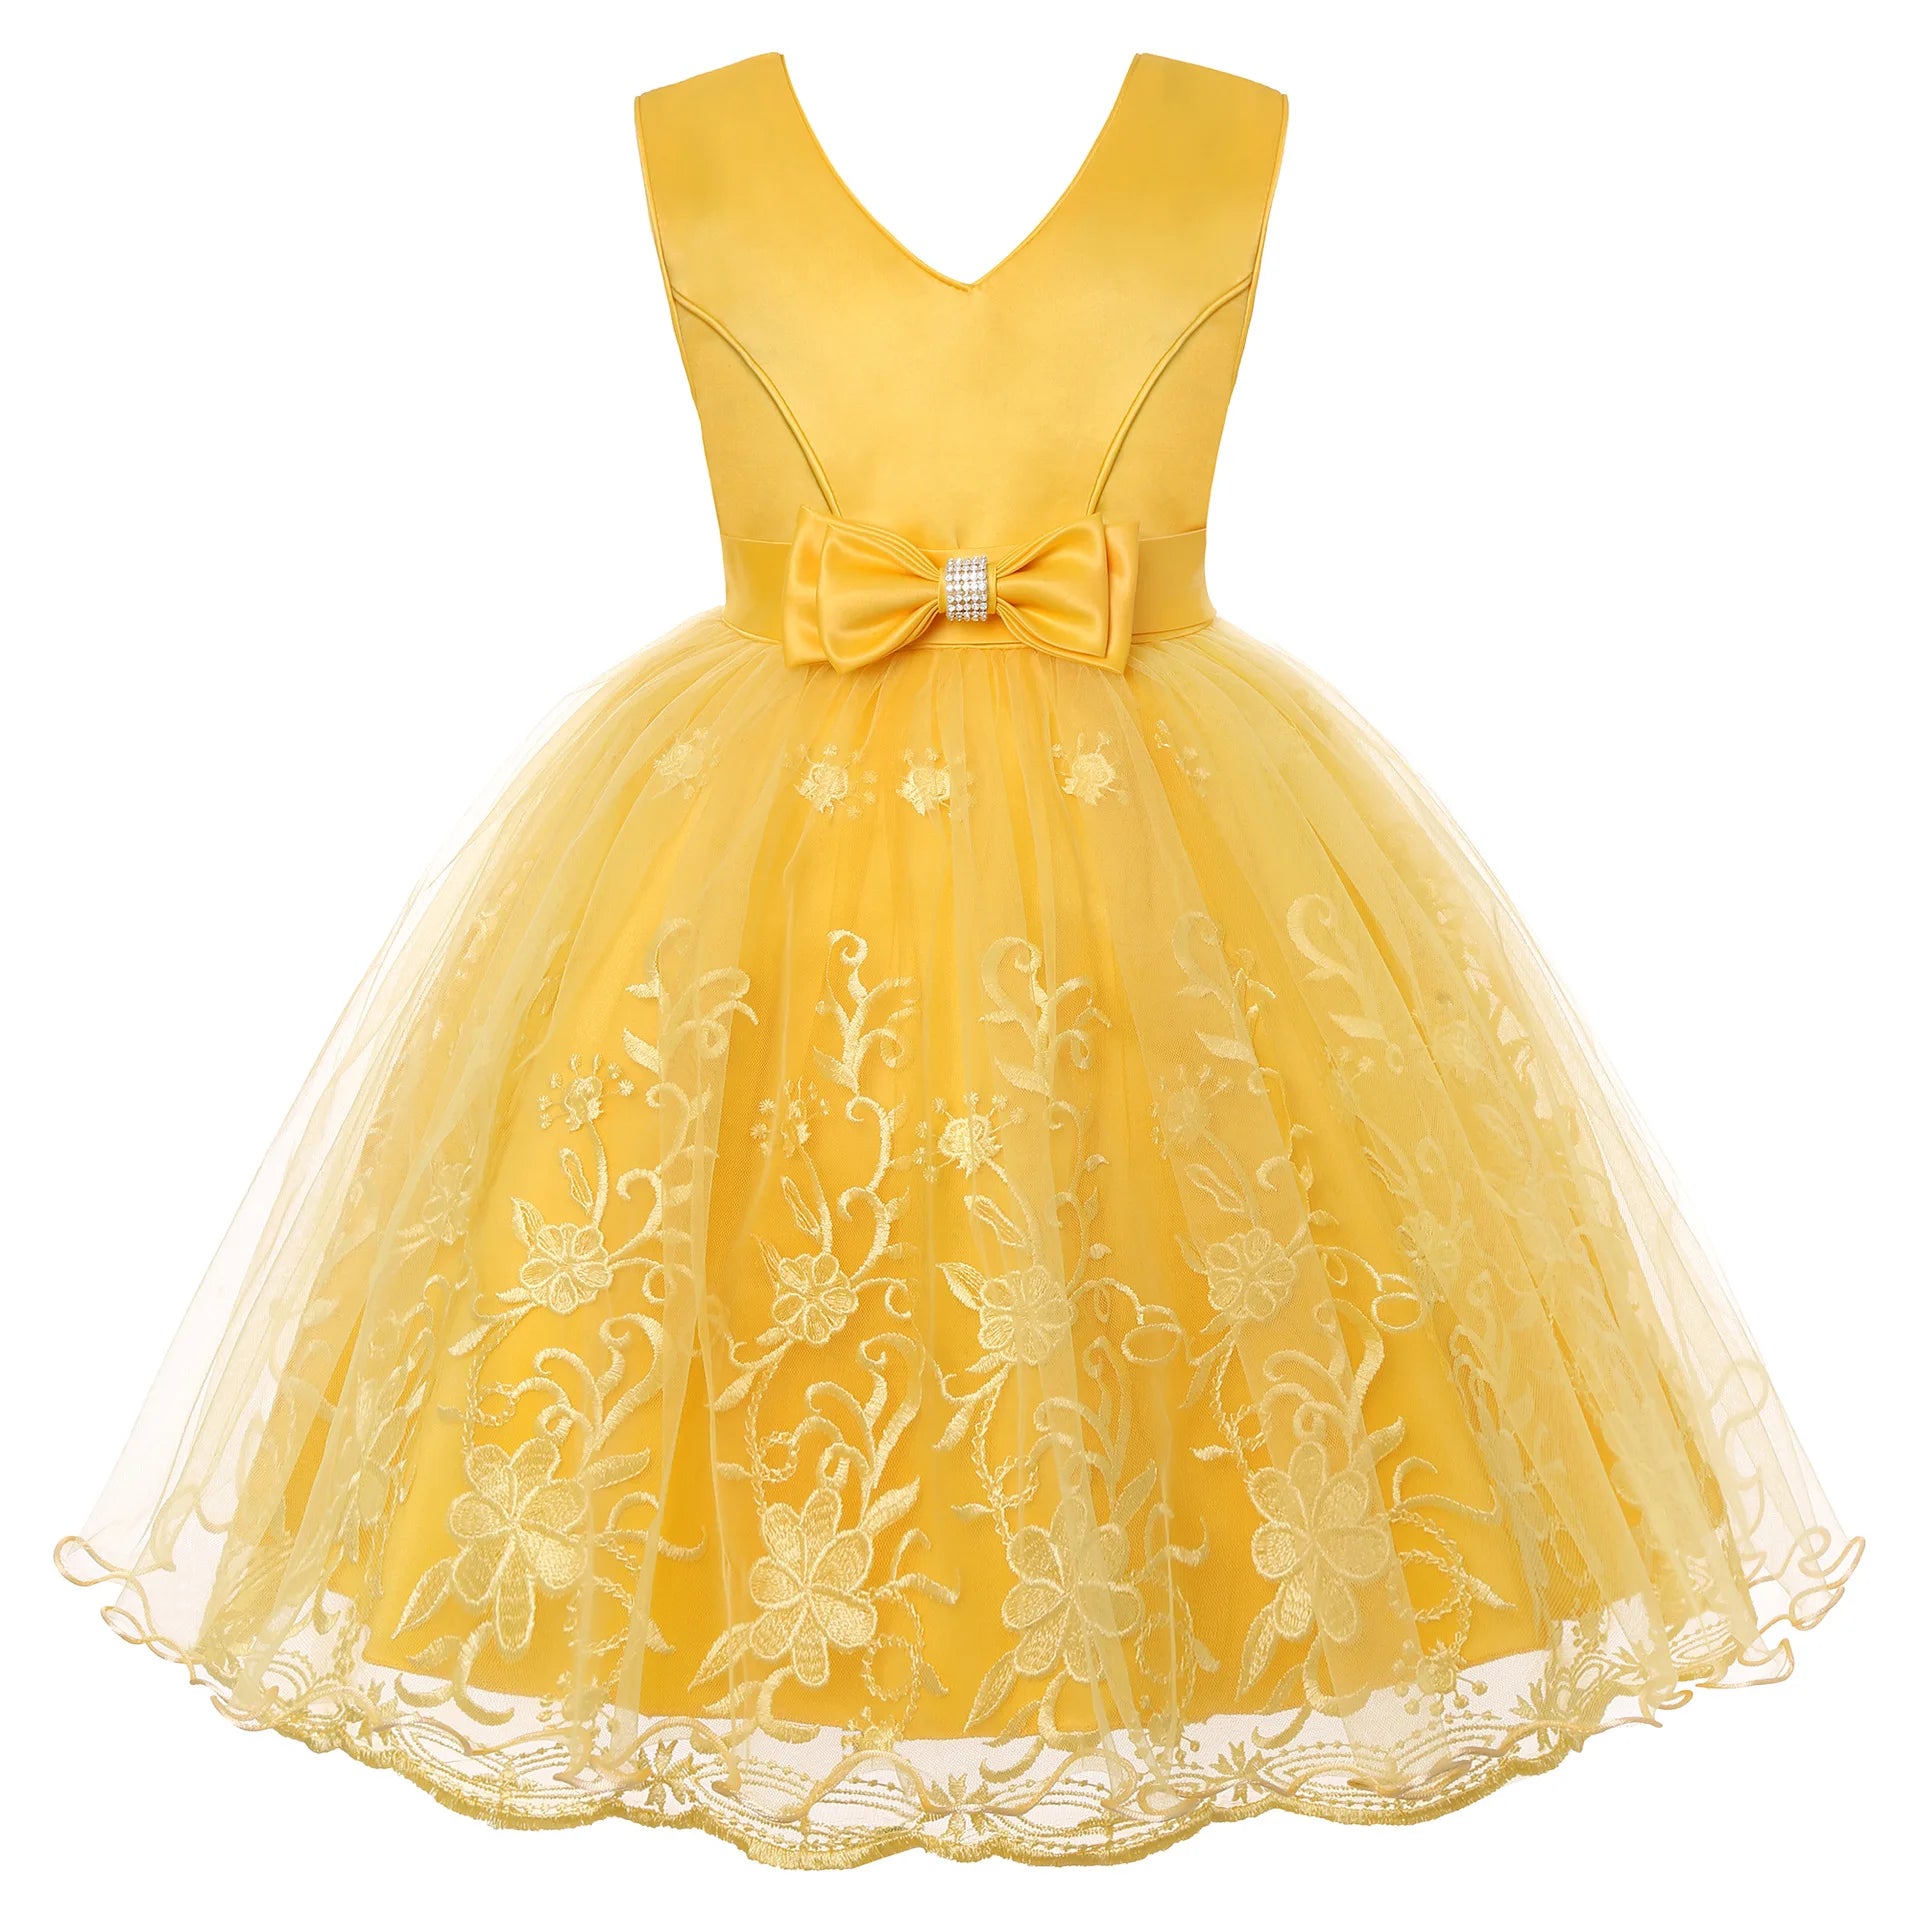 Causal Baby Girl Tutu Princess Dress Yellow by Baby Minaj Cruz